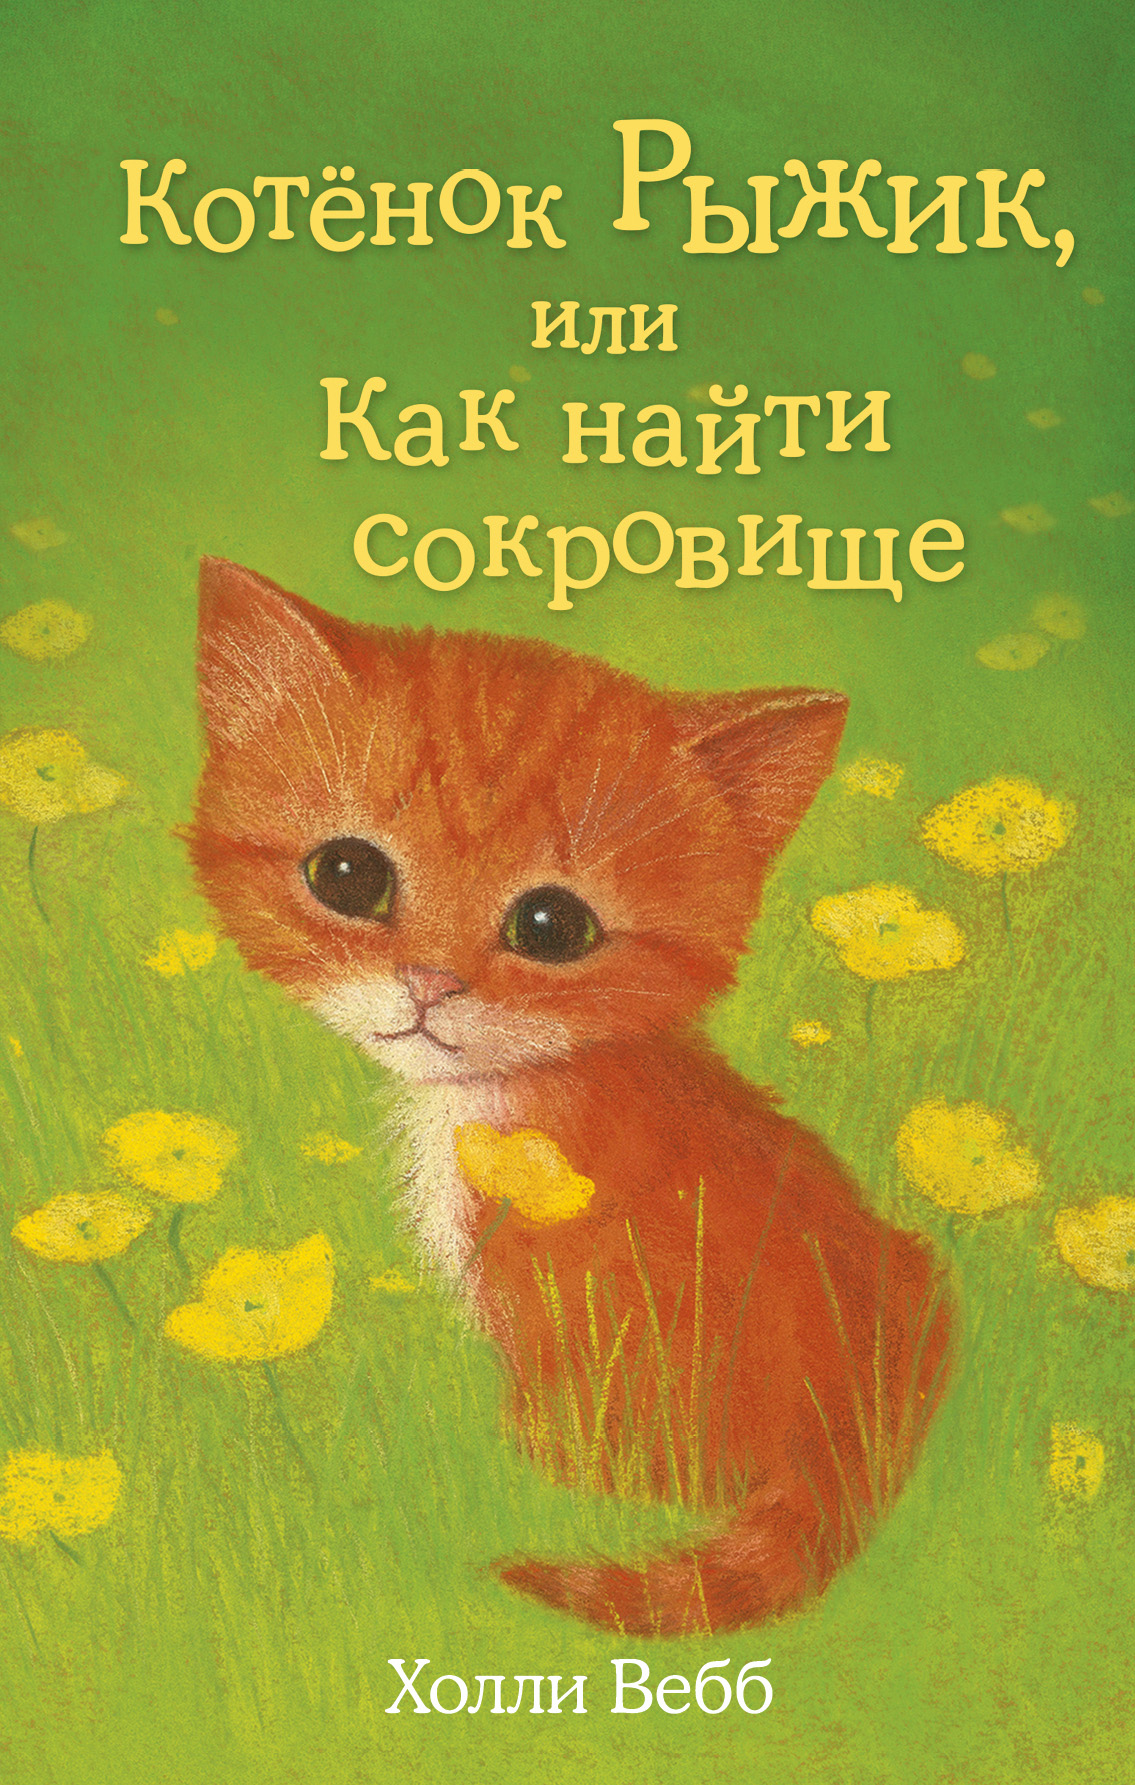 Котёнок Рыжик, или Как найти сокровище, Холли Вебб – скачать книгу fb2,  epub, pdf на ЛитРес